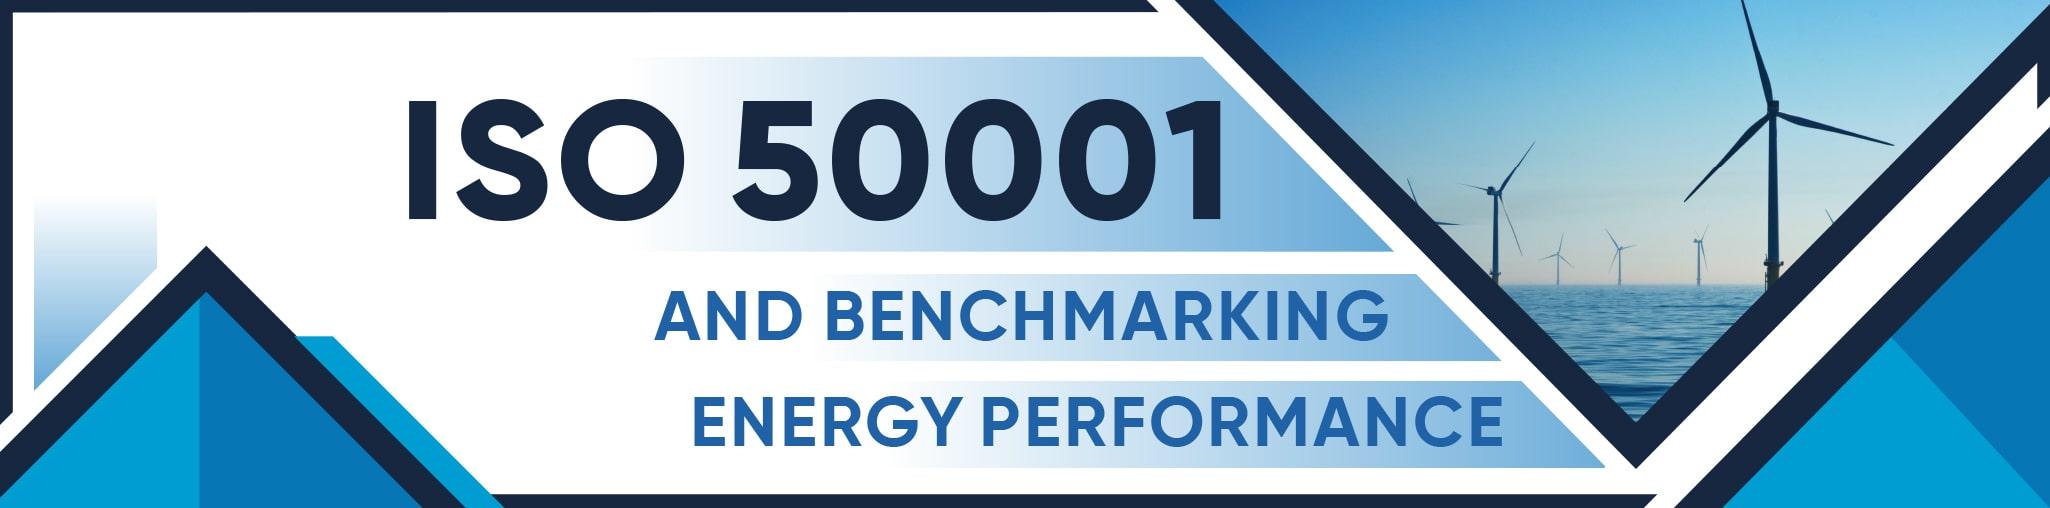 ISO 50001 Benchmarking Energy Performance